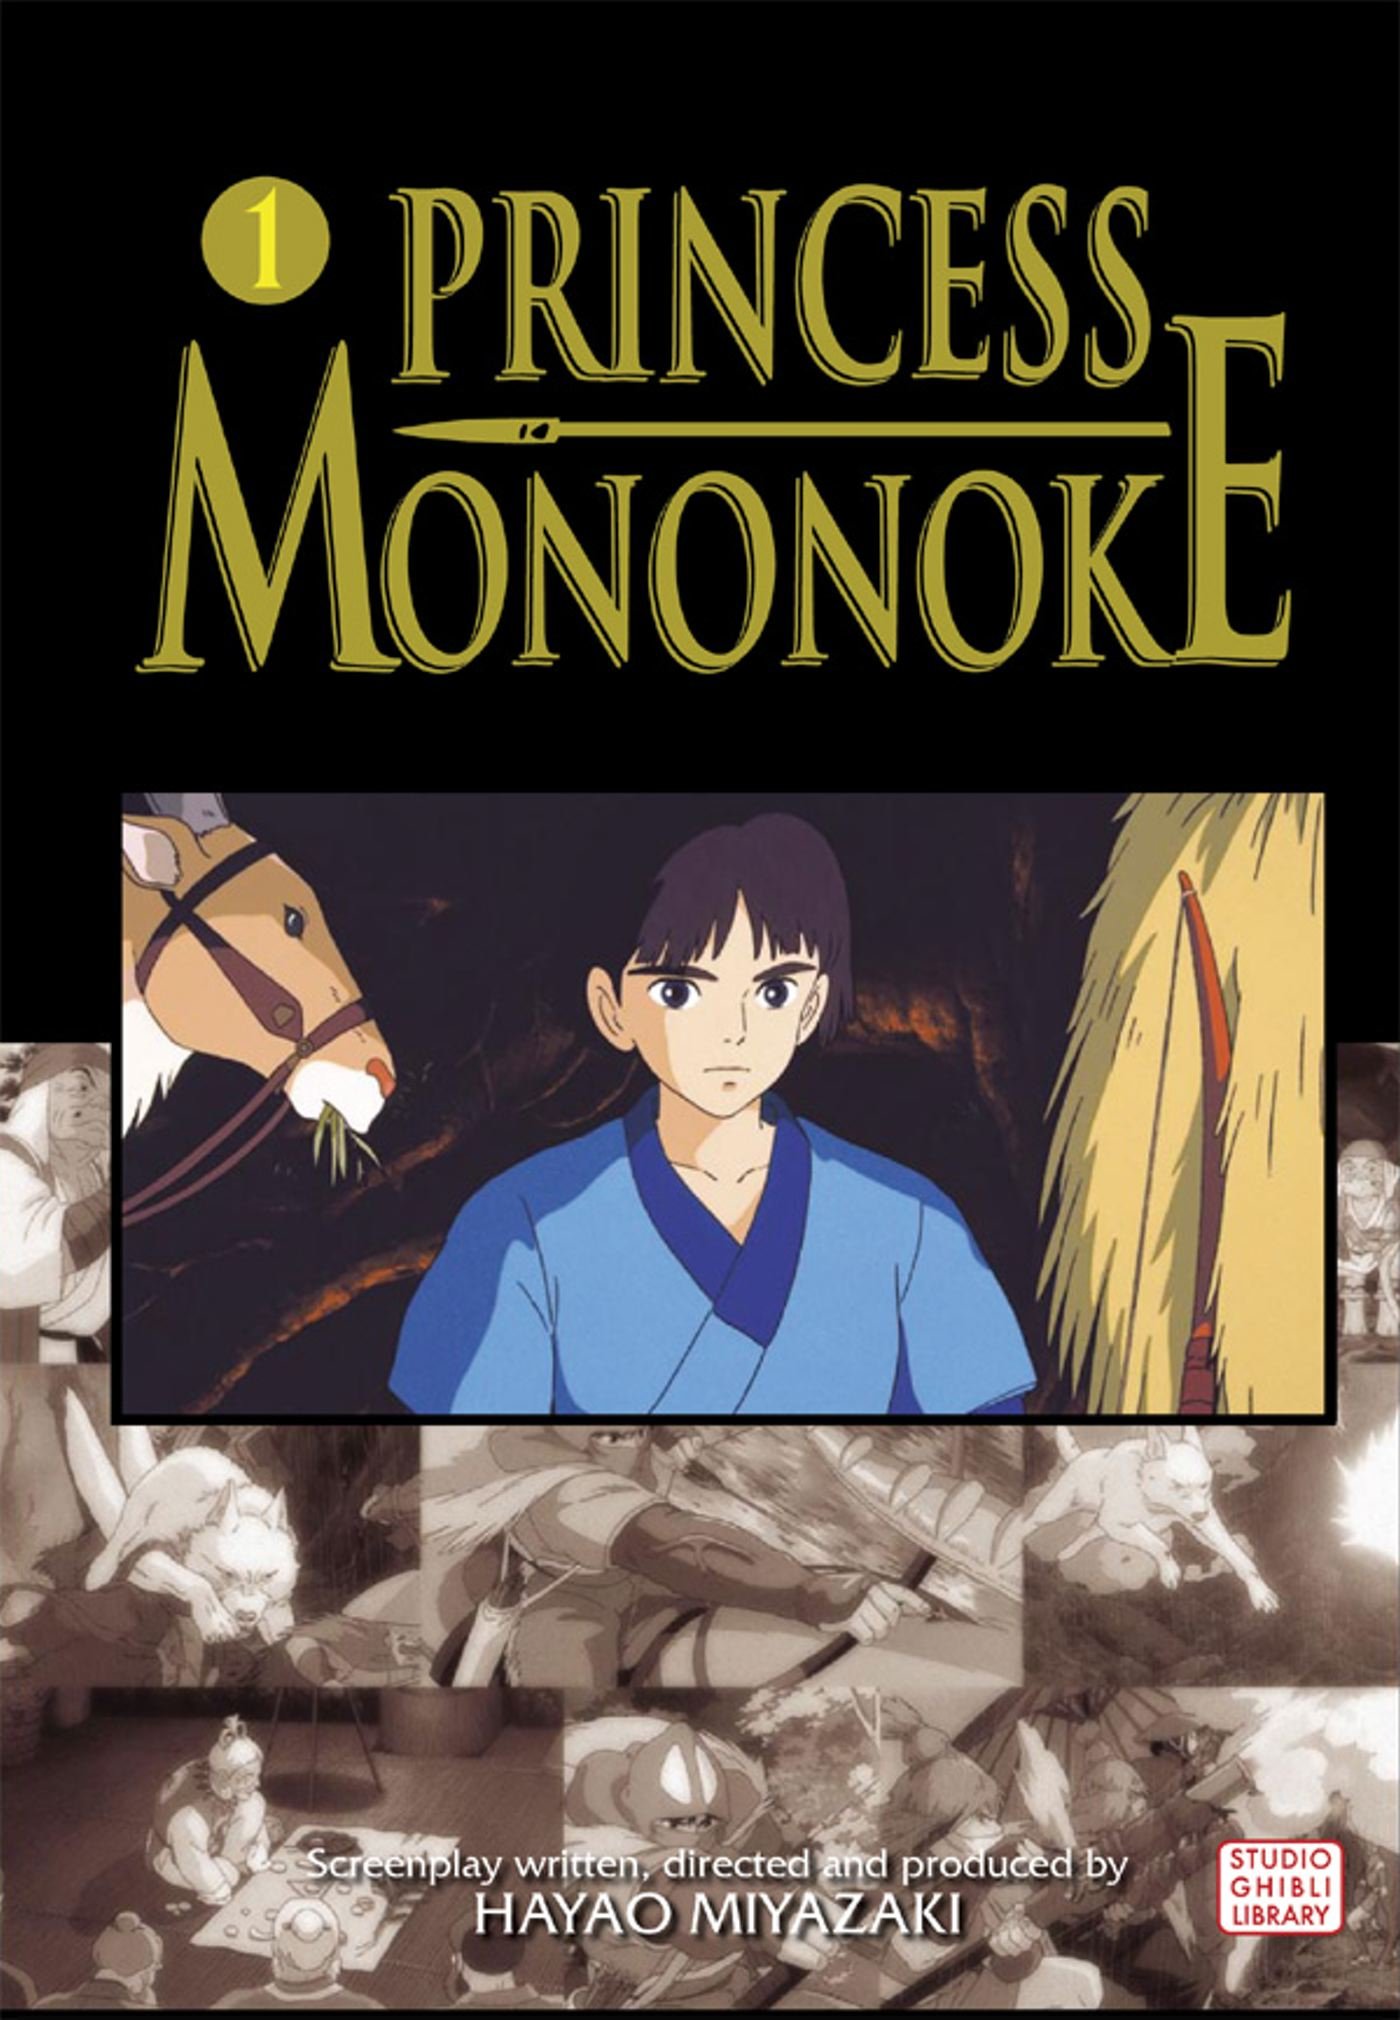 Princess Mononoke Film Comic 1 (Princess Mononoke Film Comics) [Paperback]